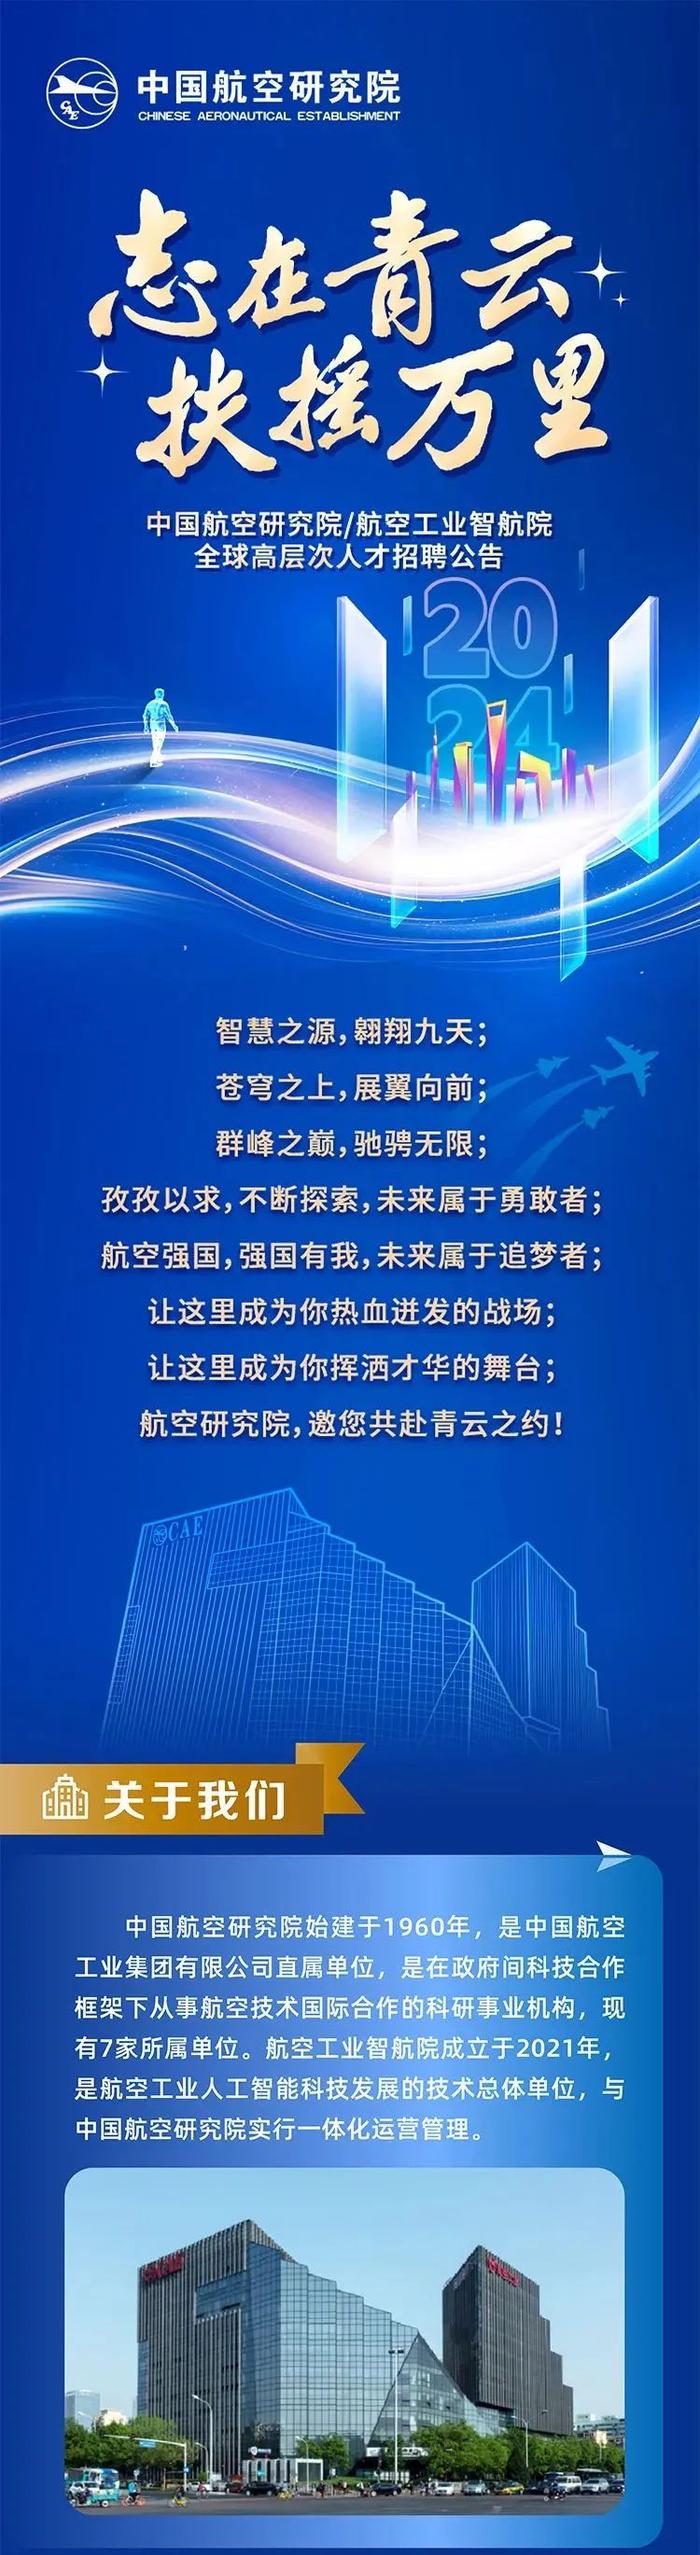 【社招】中国航空研究院/航空工业智航院全球高层次人才招聘公告